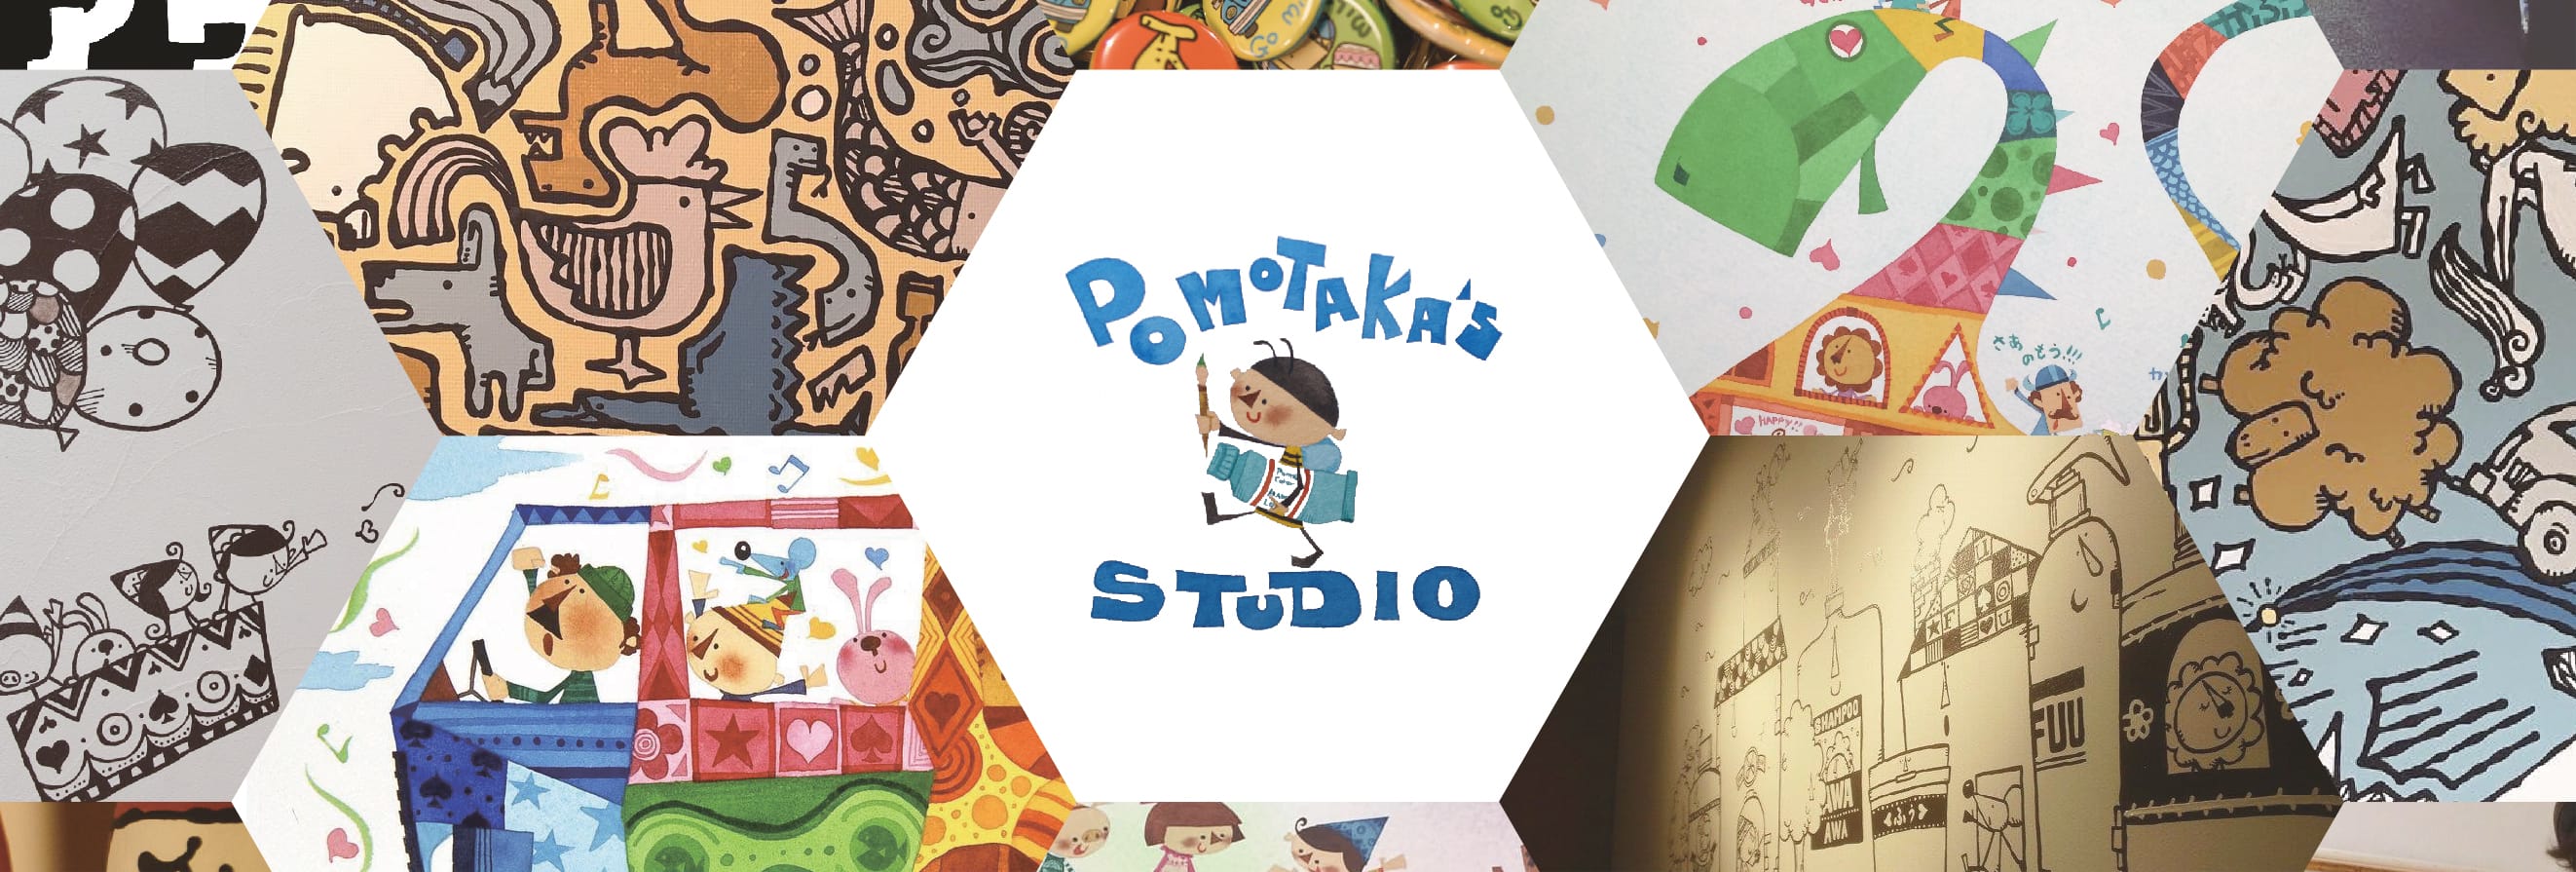 Pomotaka's Studio